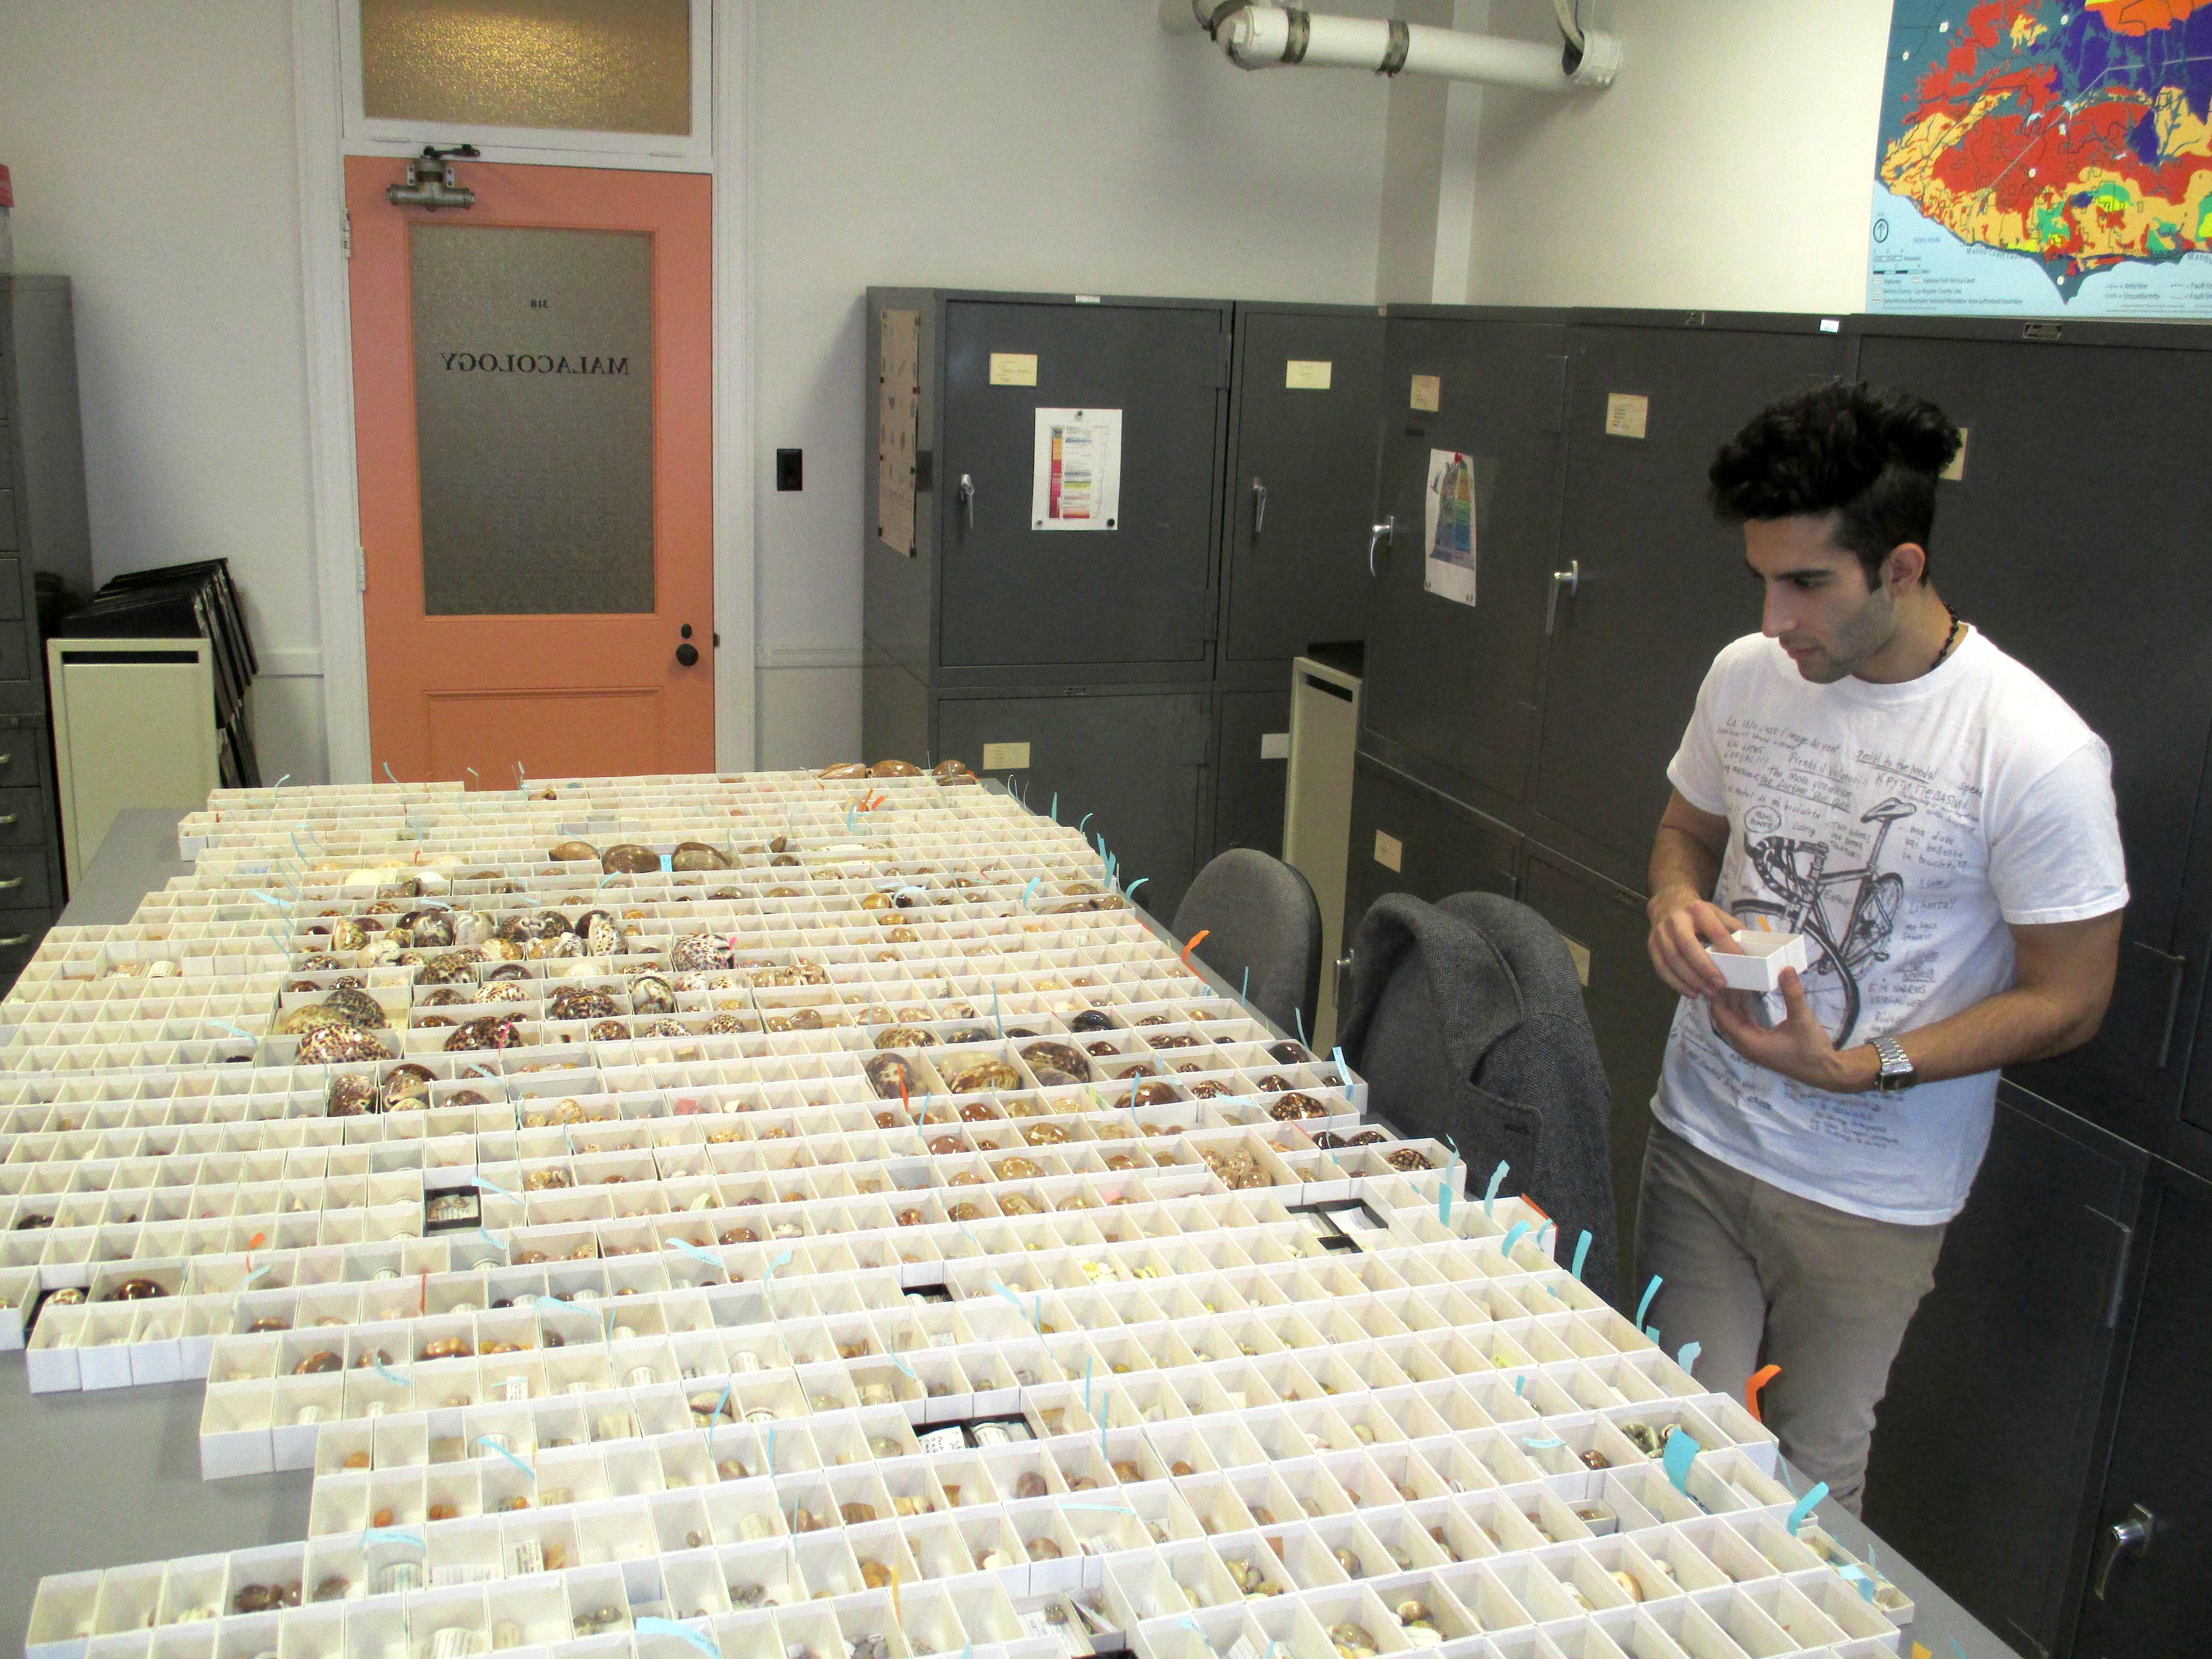 Andrew assembling hundreds of cowrie shells